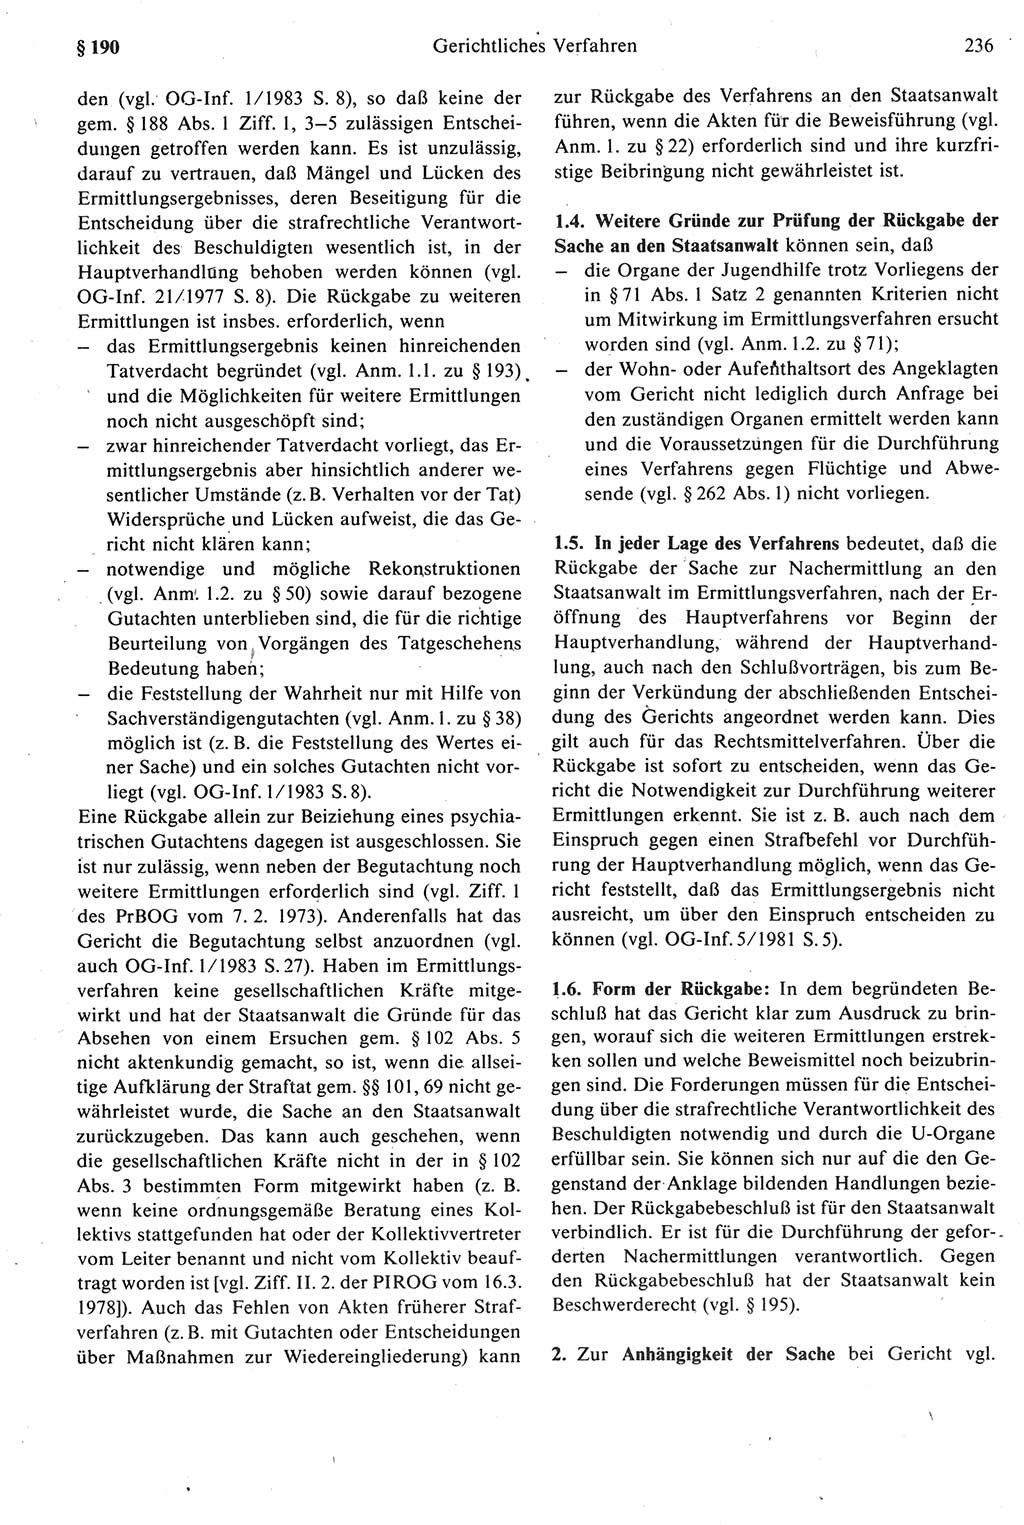 Strafprozeßrecht der DDR [Deutsche Demokratische Republik], Kommentar zur Strafprozeßordnung (StPO) 1987, Seite 236 (Strafprozeßr. DDR Komm. StPO 1987, S. 236)